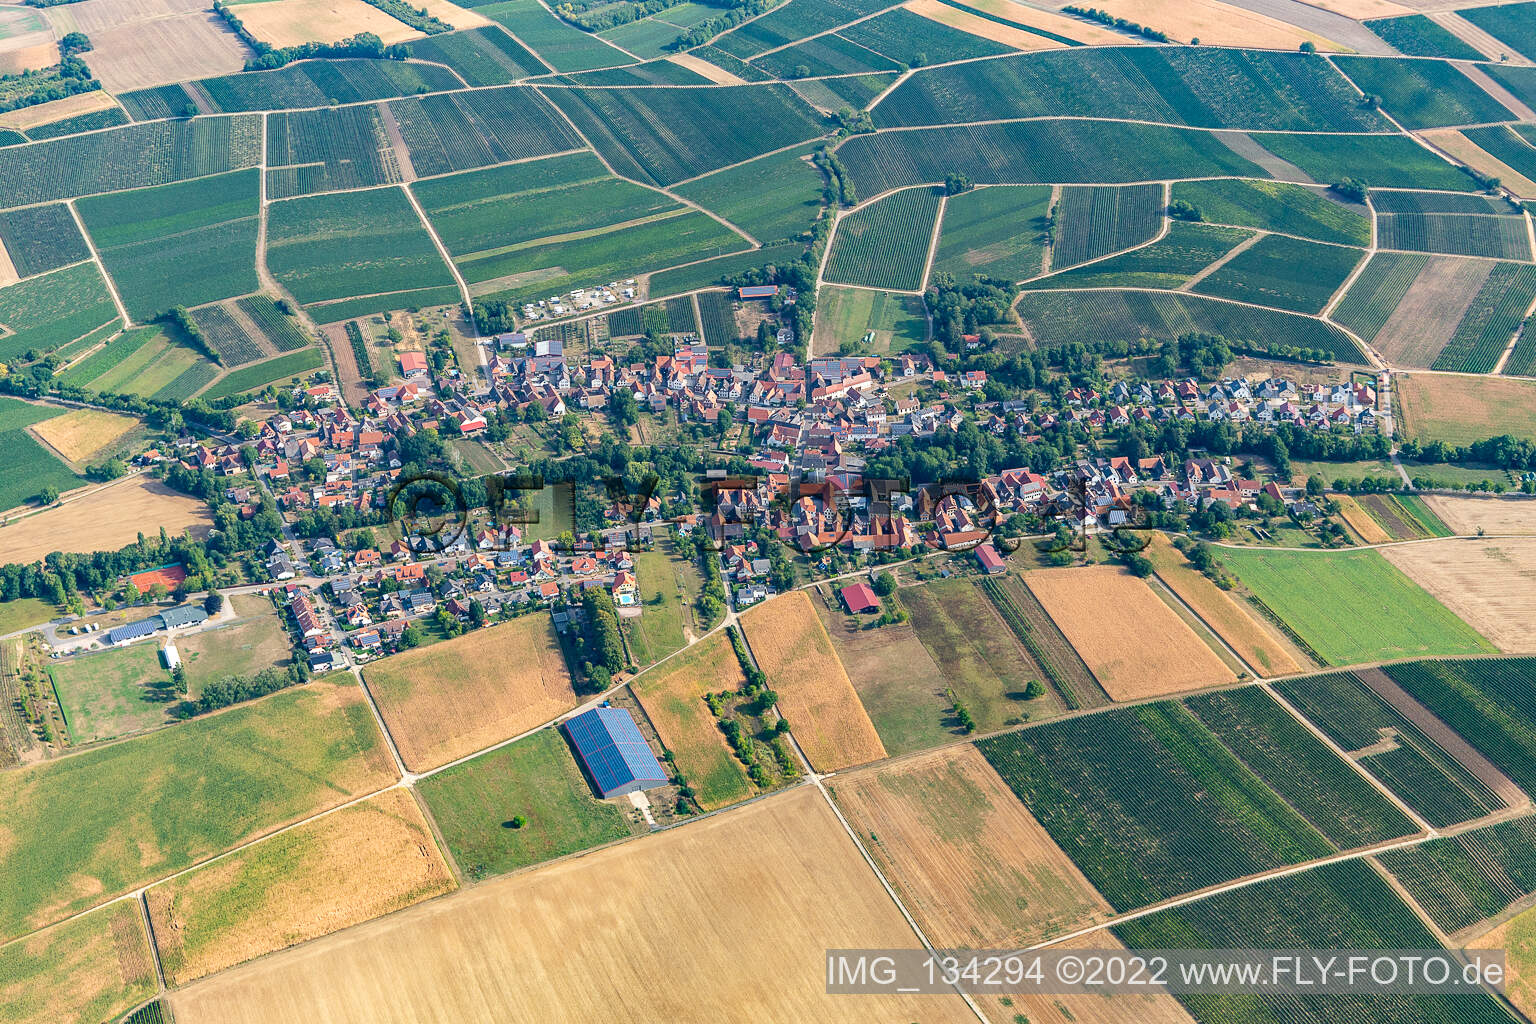 Dierbach im Bundesland Rheinland-Pfalz, Deutschland aus der Drohnenperspektive